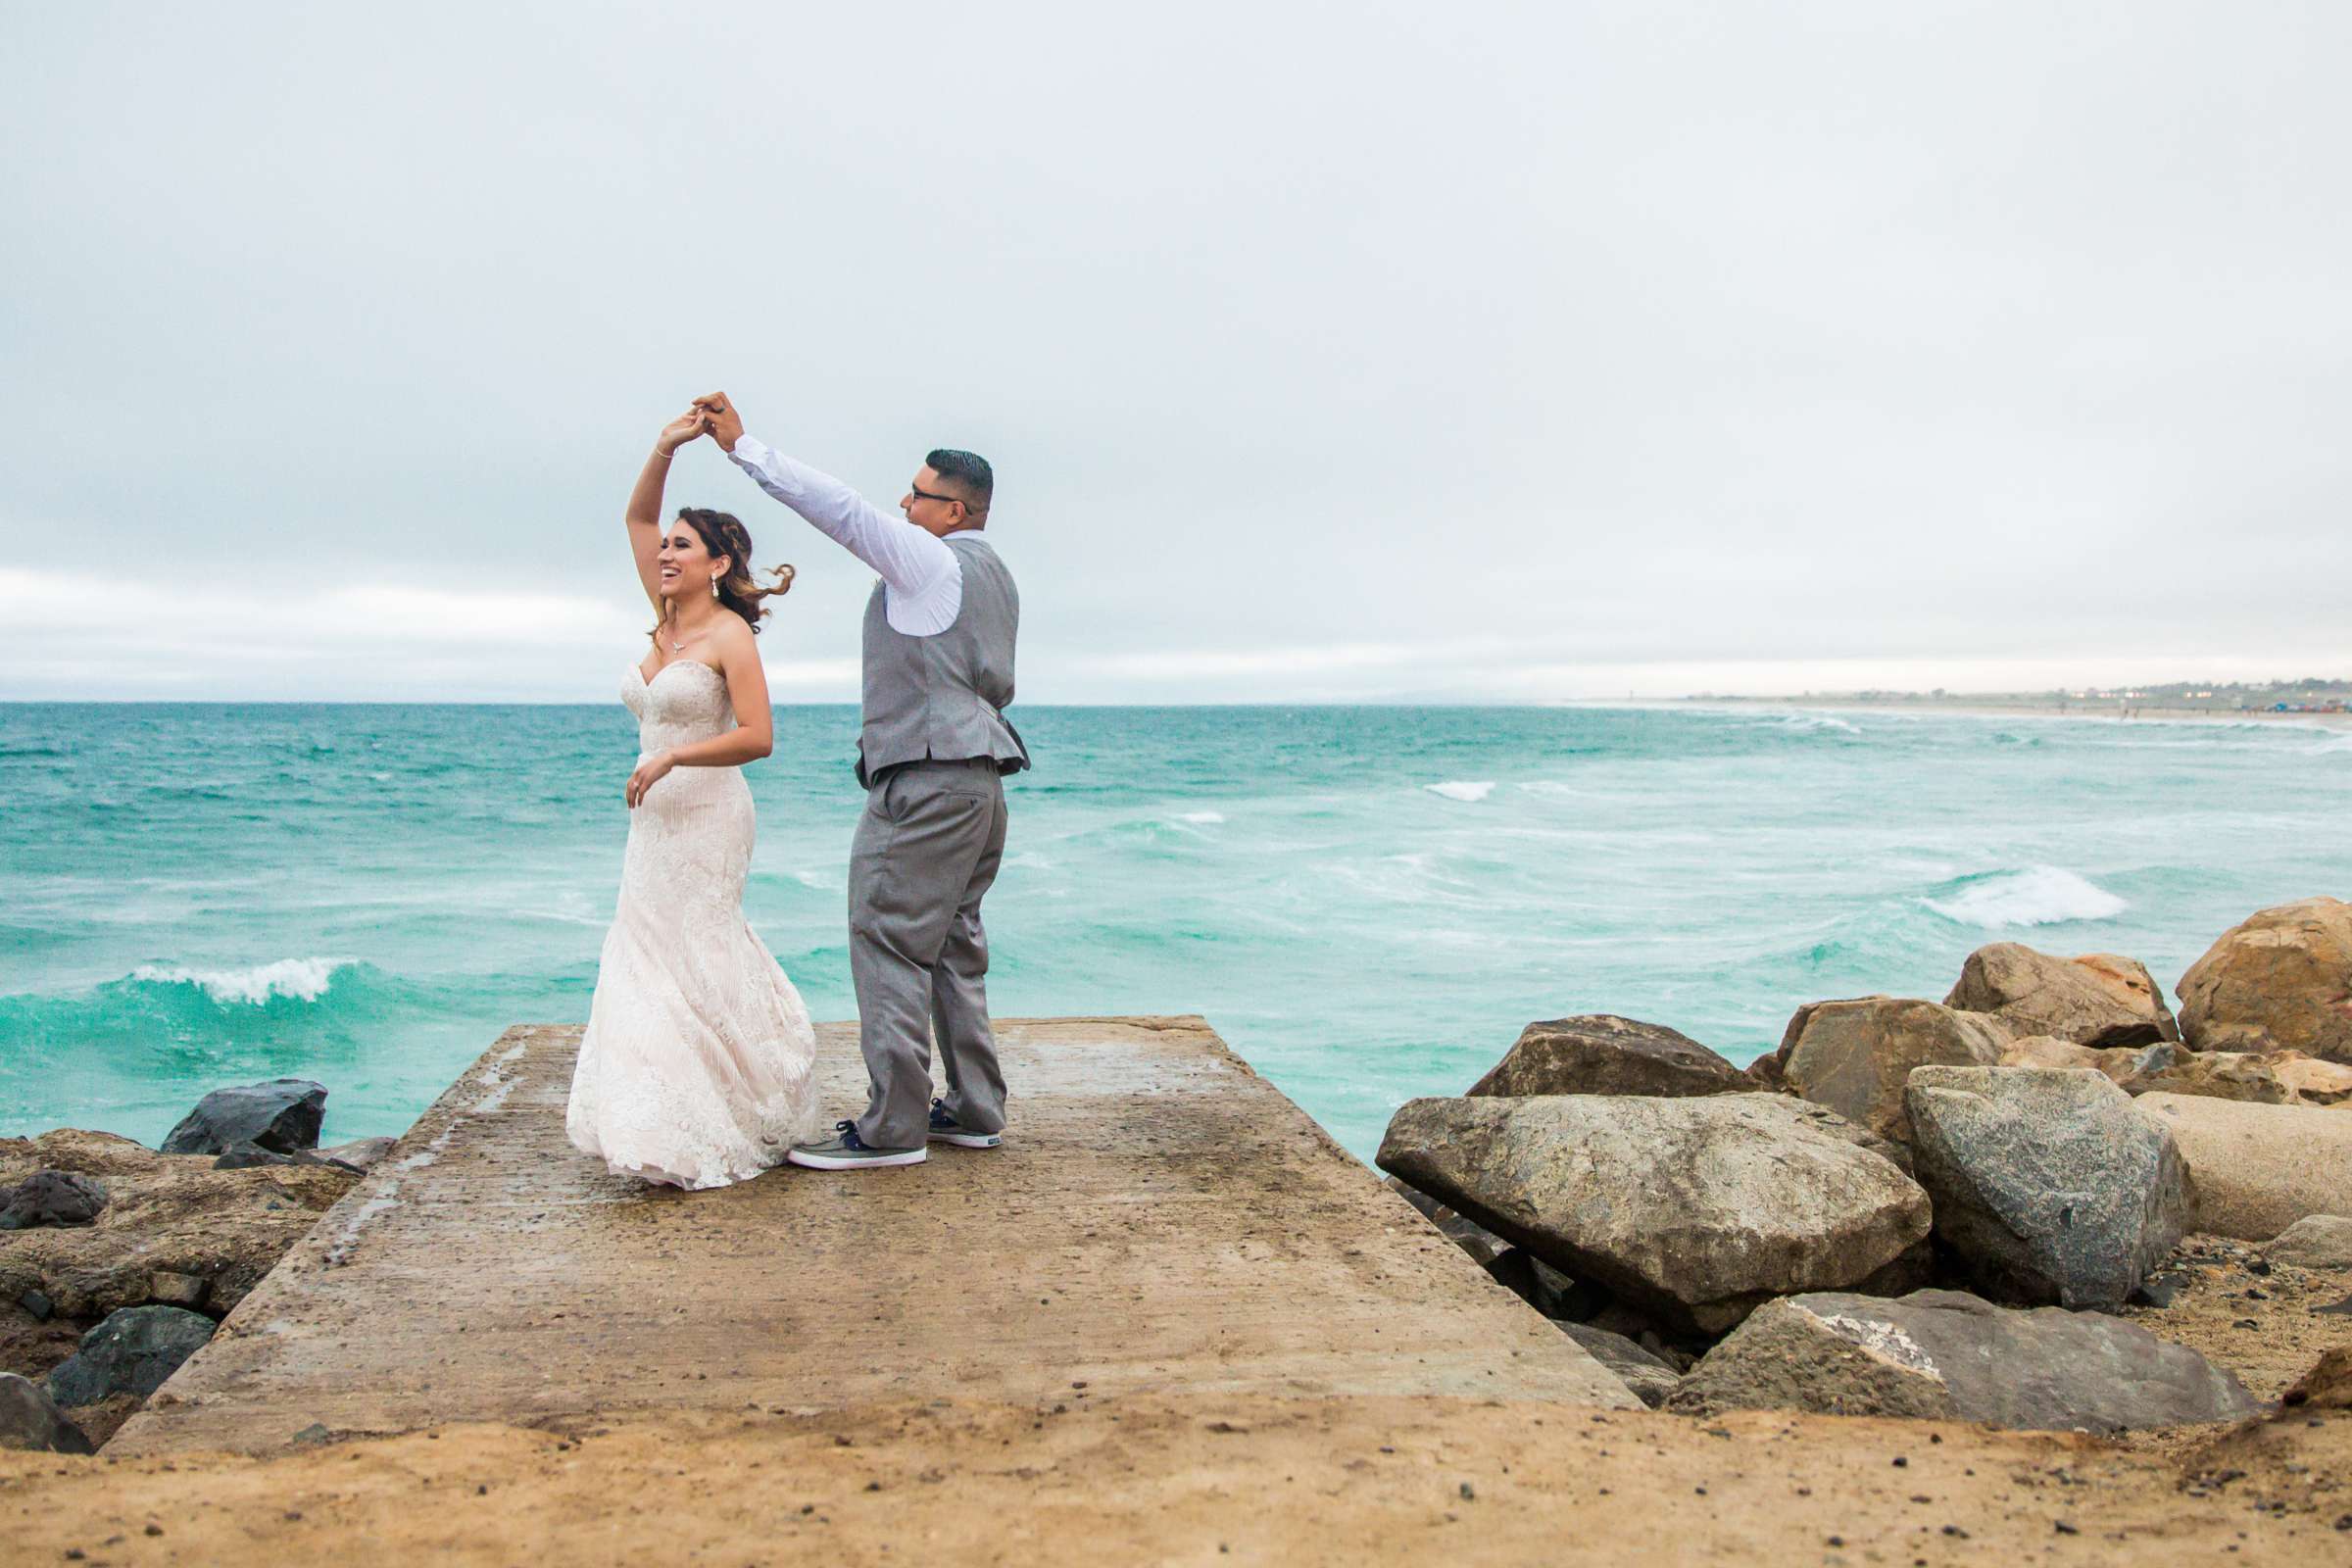 Del Mar Beach Resort Wedding coordinated by La Casa Del Mar, Alisa and Carlos Wedding Photo #380896 by True Photography